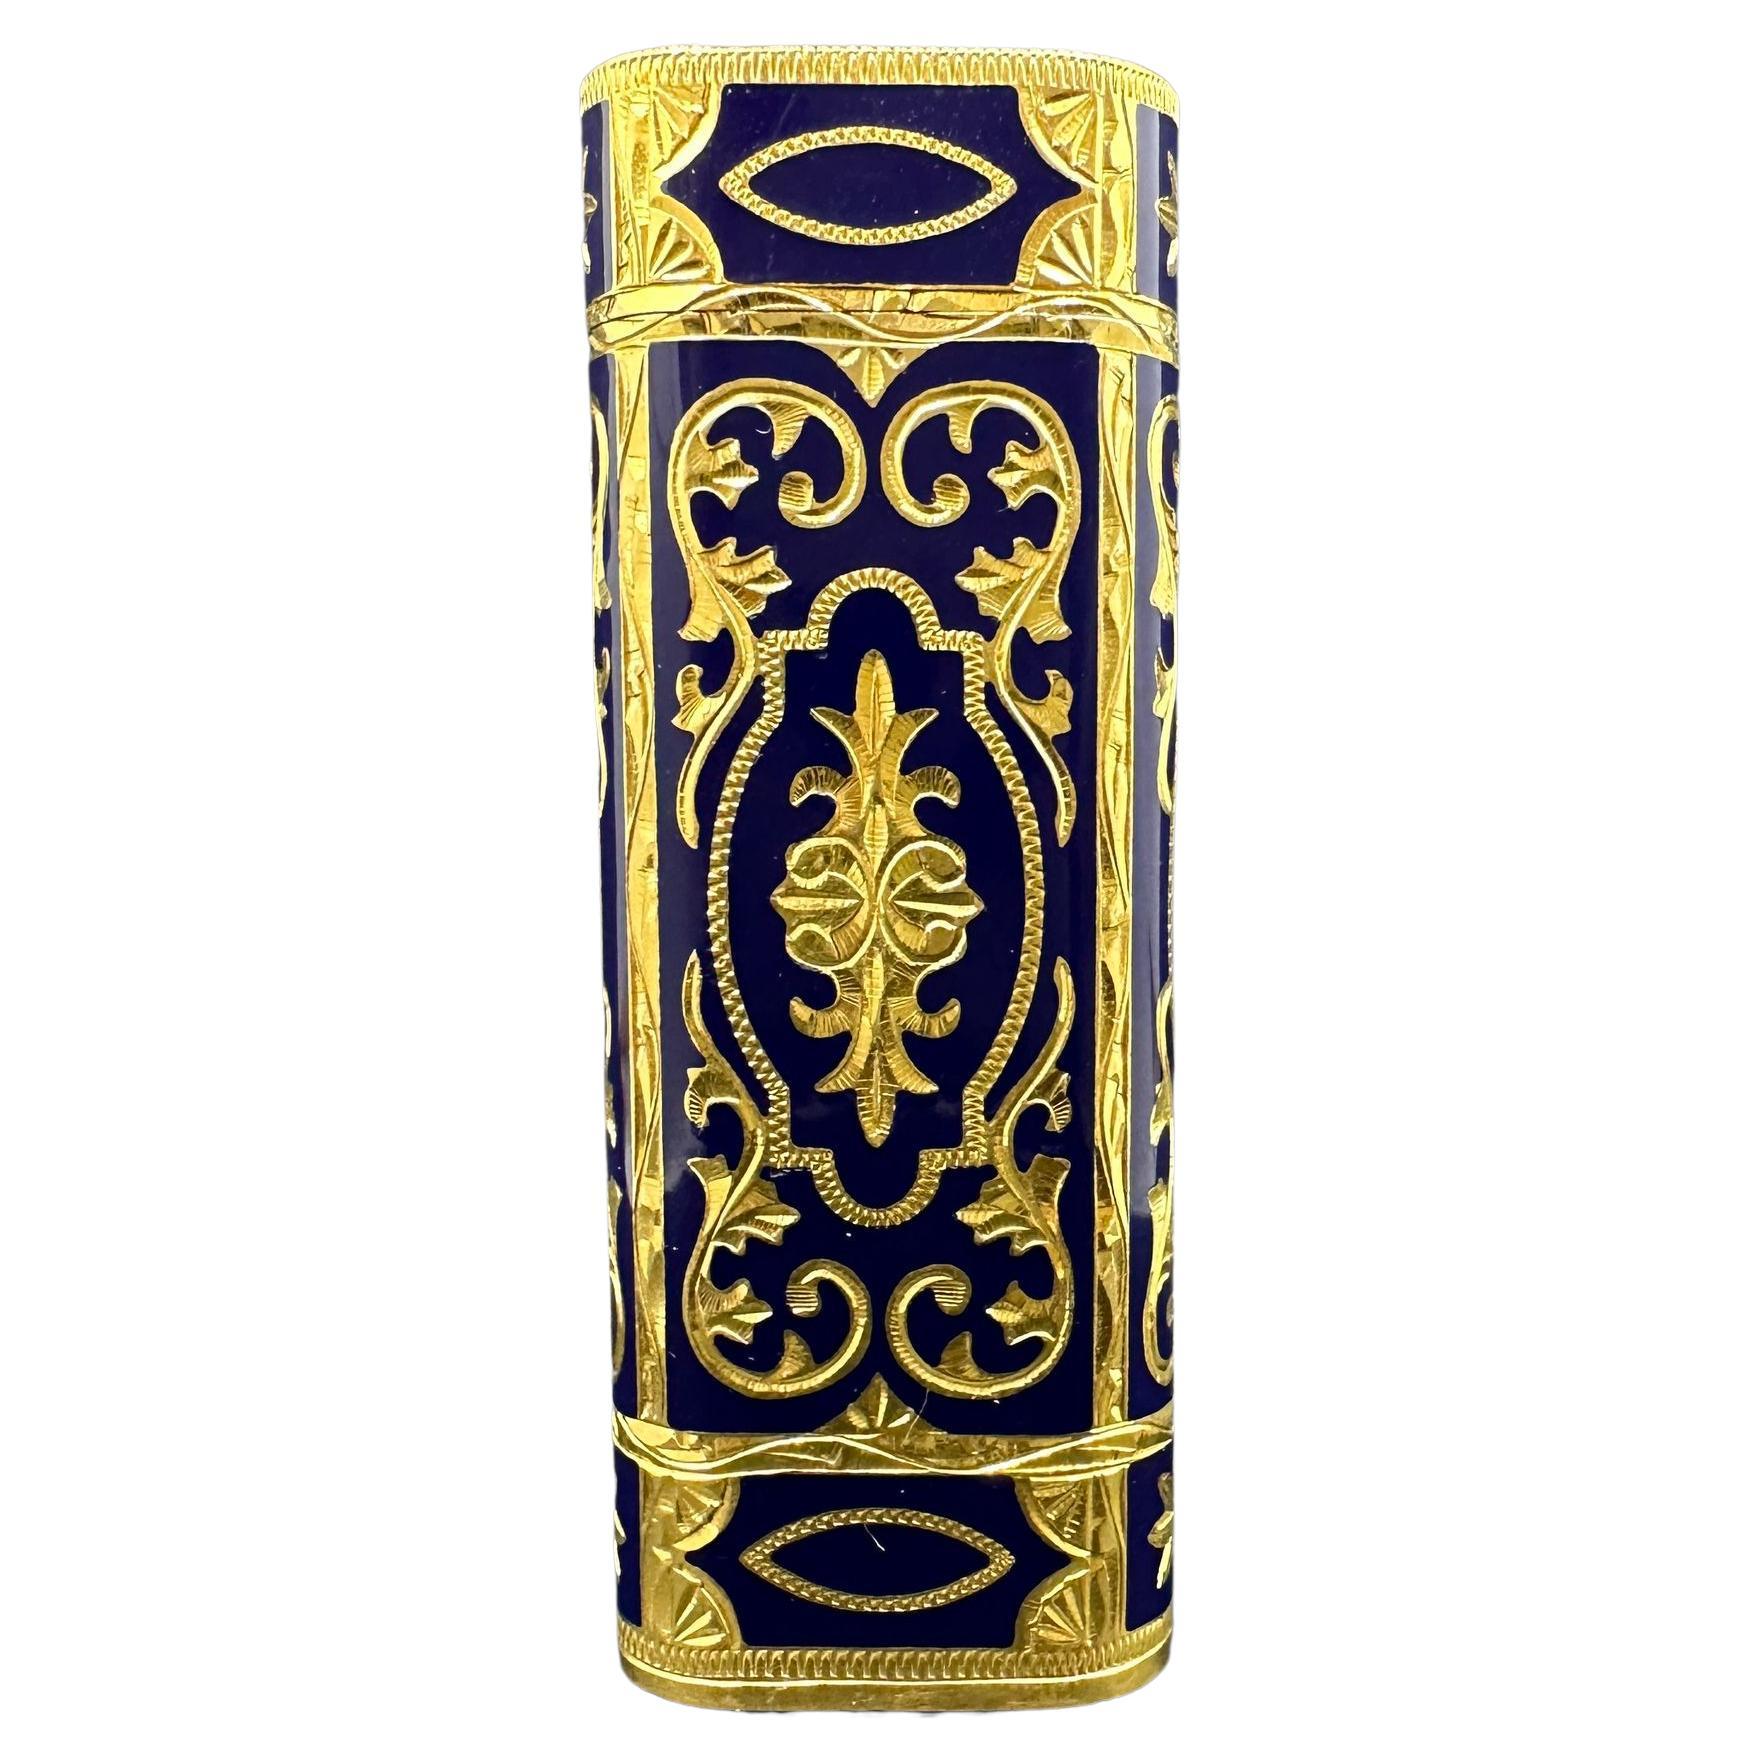 Rare Baroque Cartier “Royking” Vintage 18gold & Lacquer Lighter